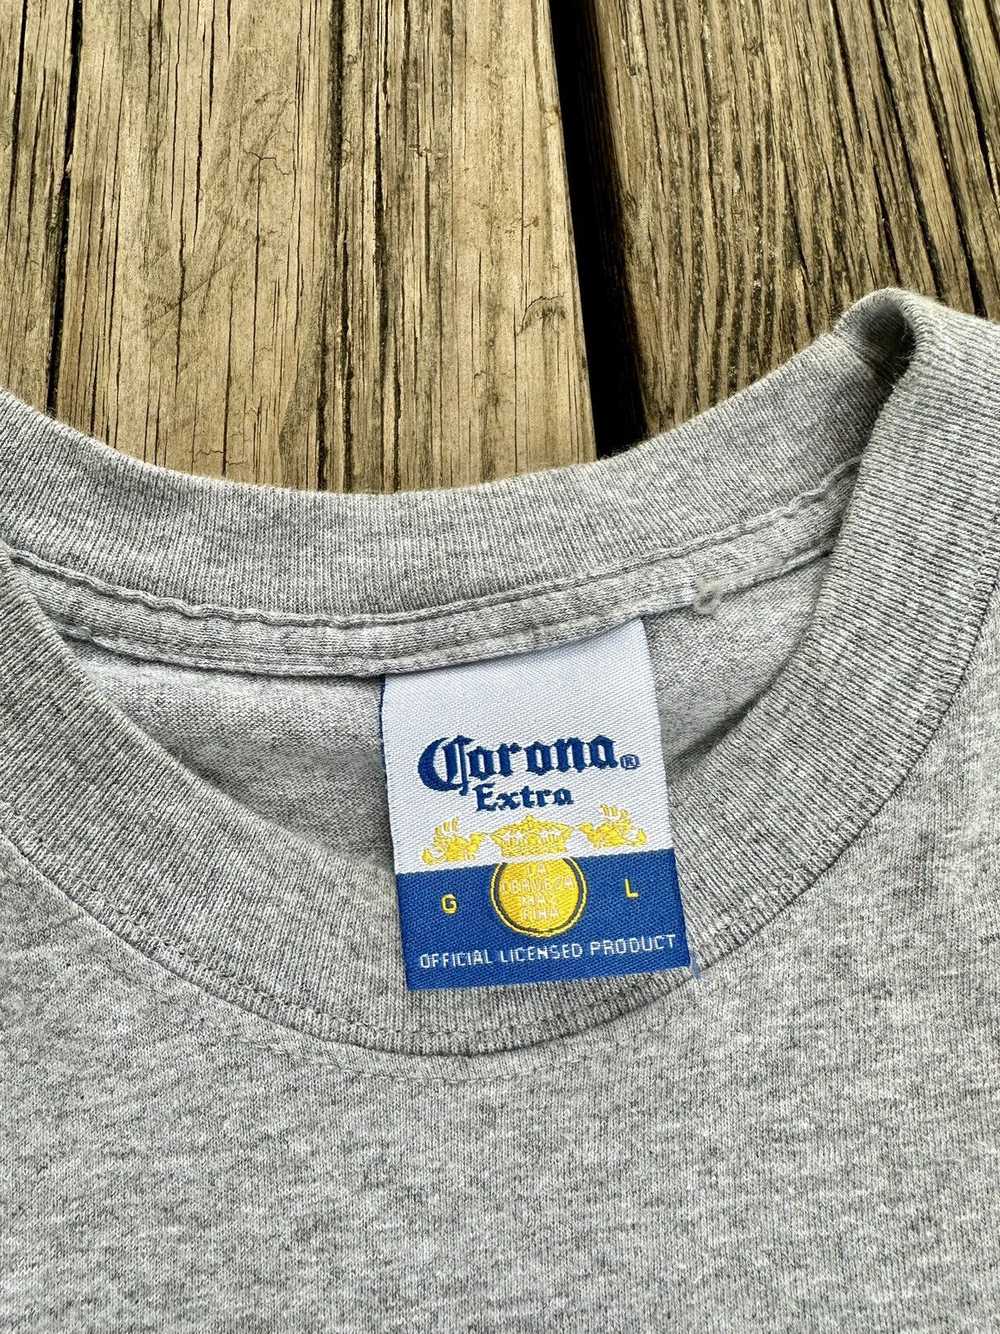 Corona Corona Extra Shirt - image 9